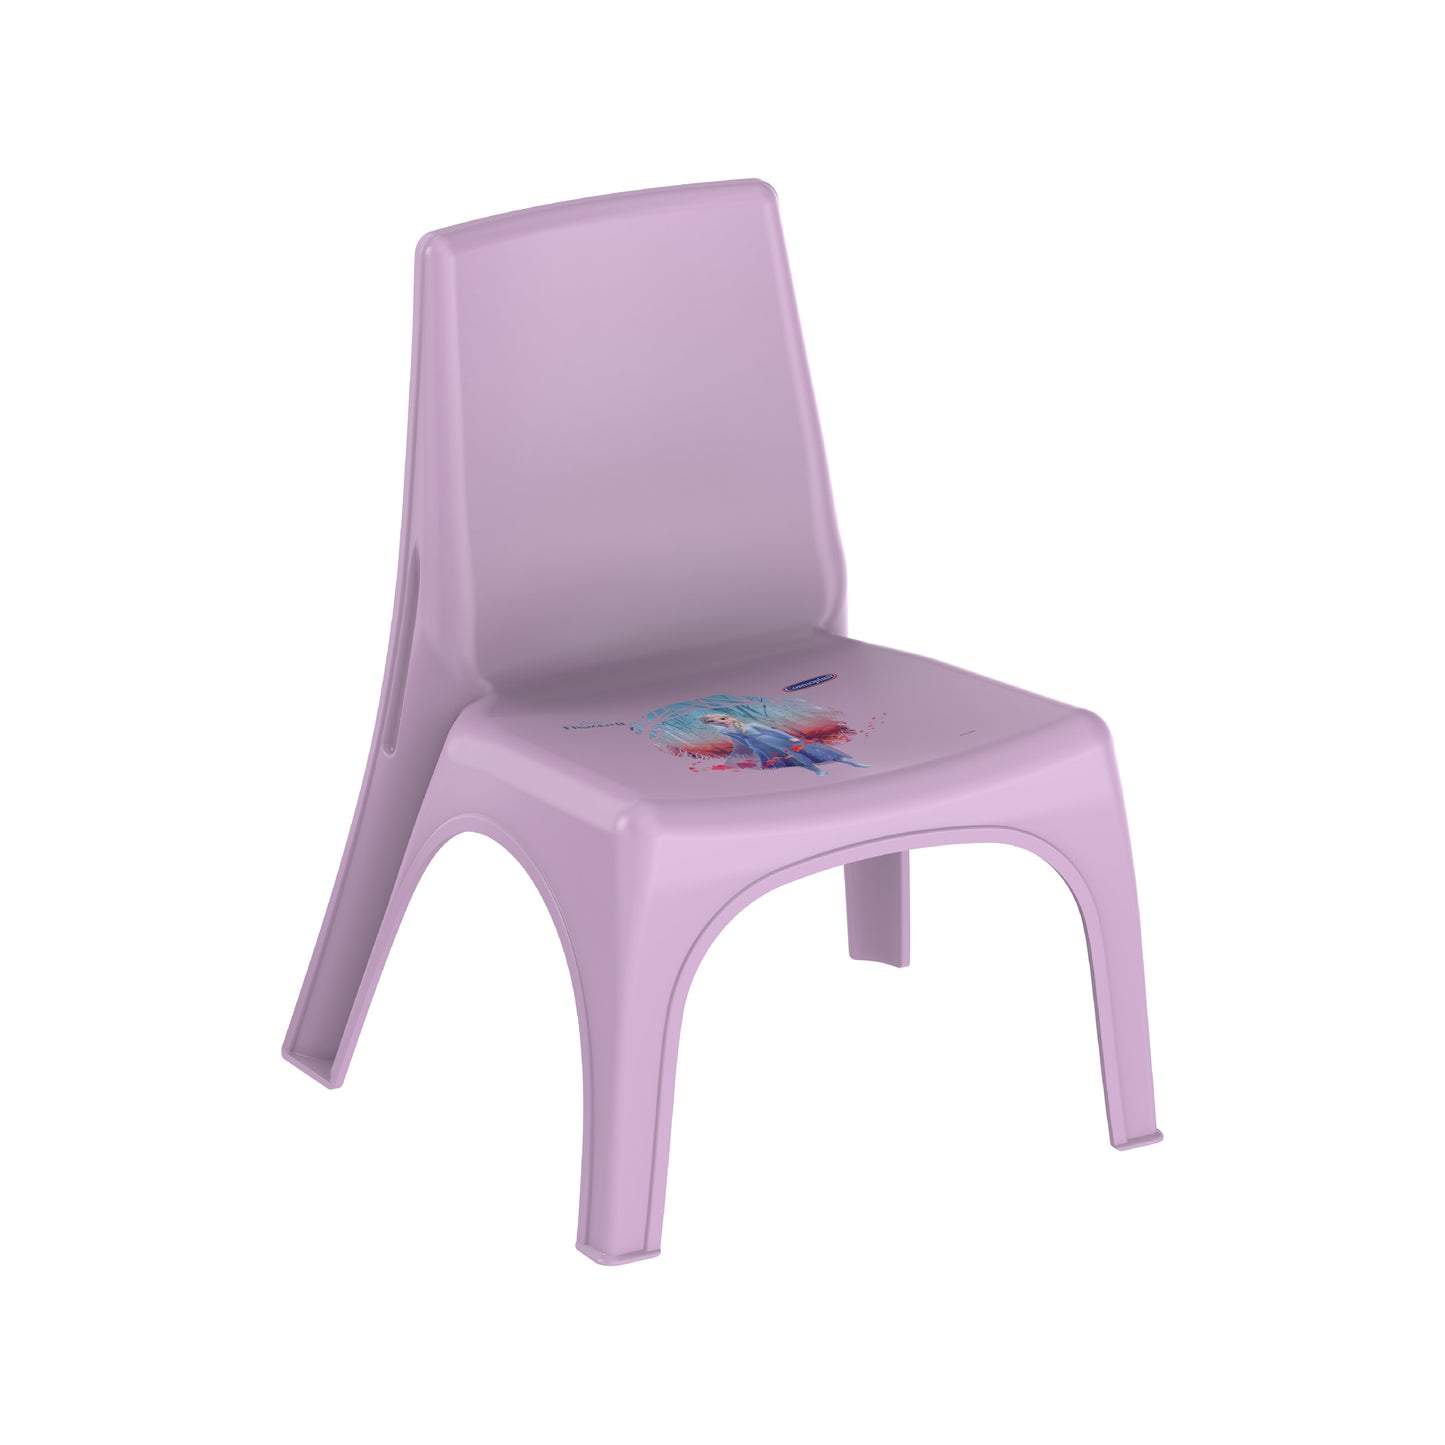 Cosmoplast Disney Frozen Plastic Baby Chair